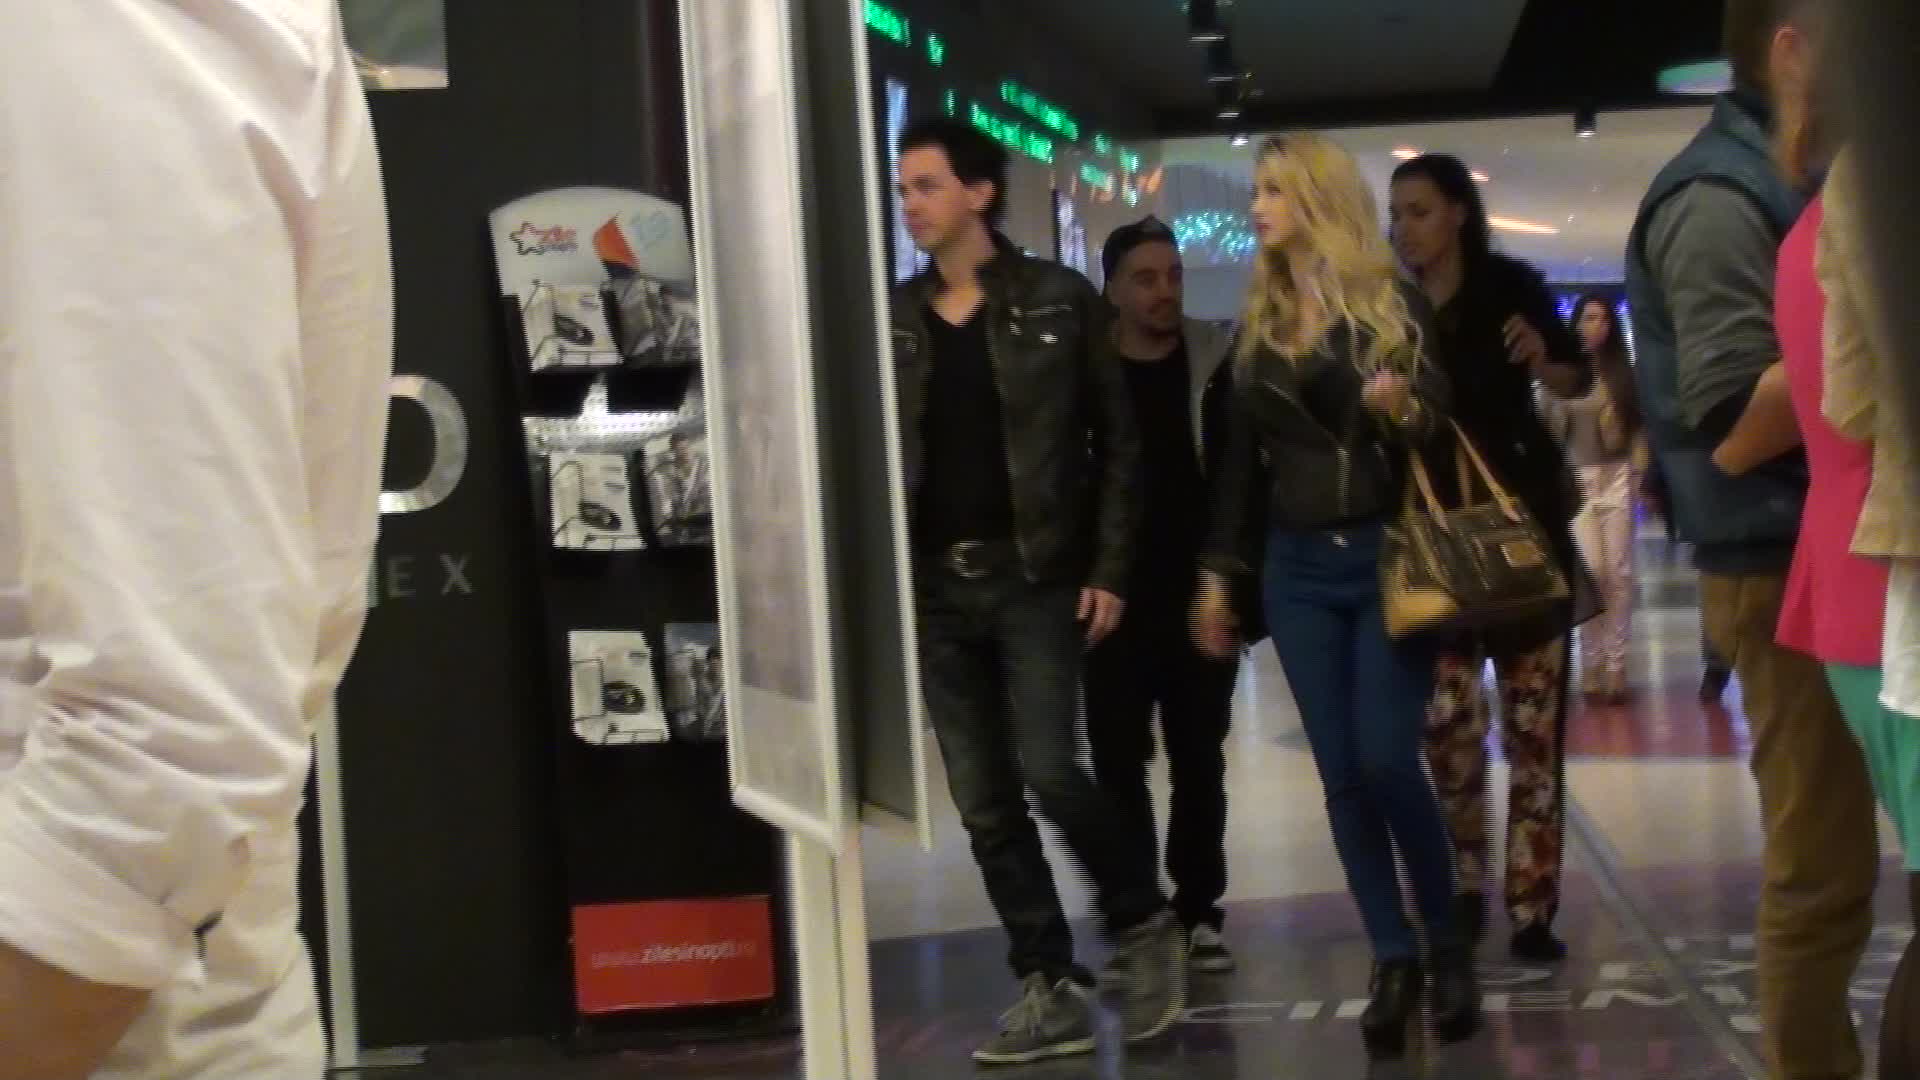 Keo si-a scos iubita la plimbare in mall